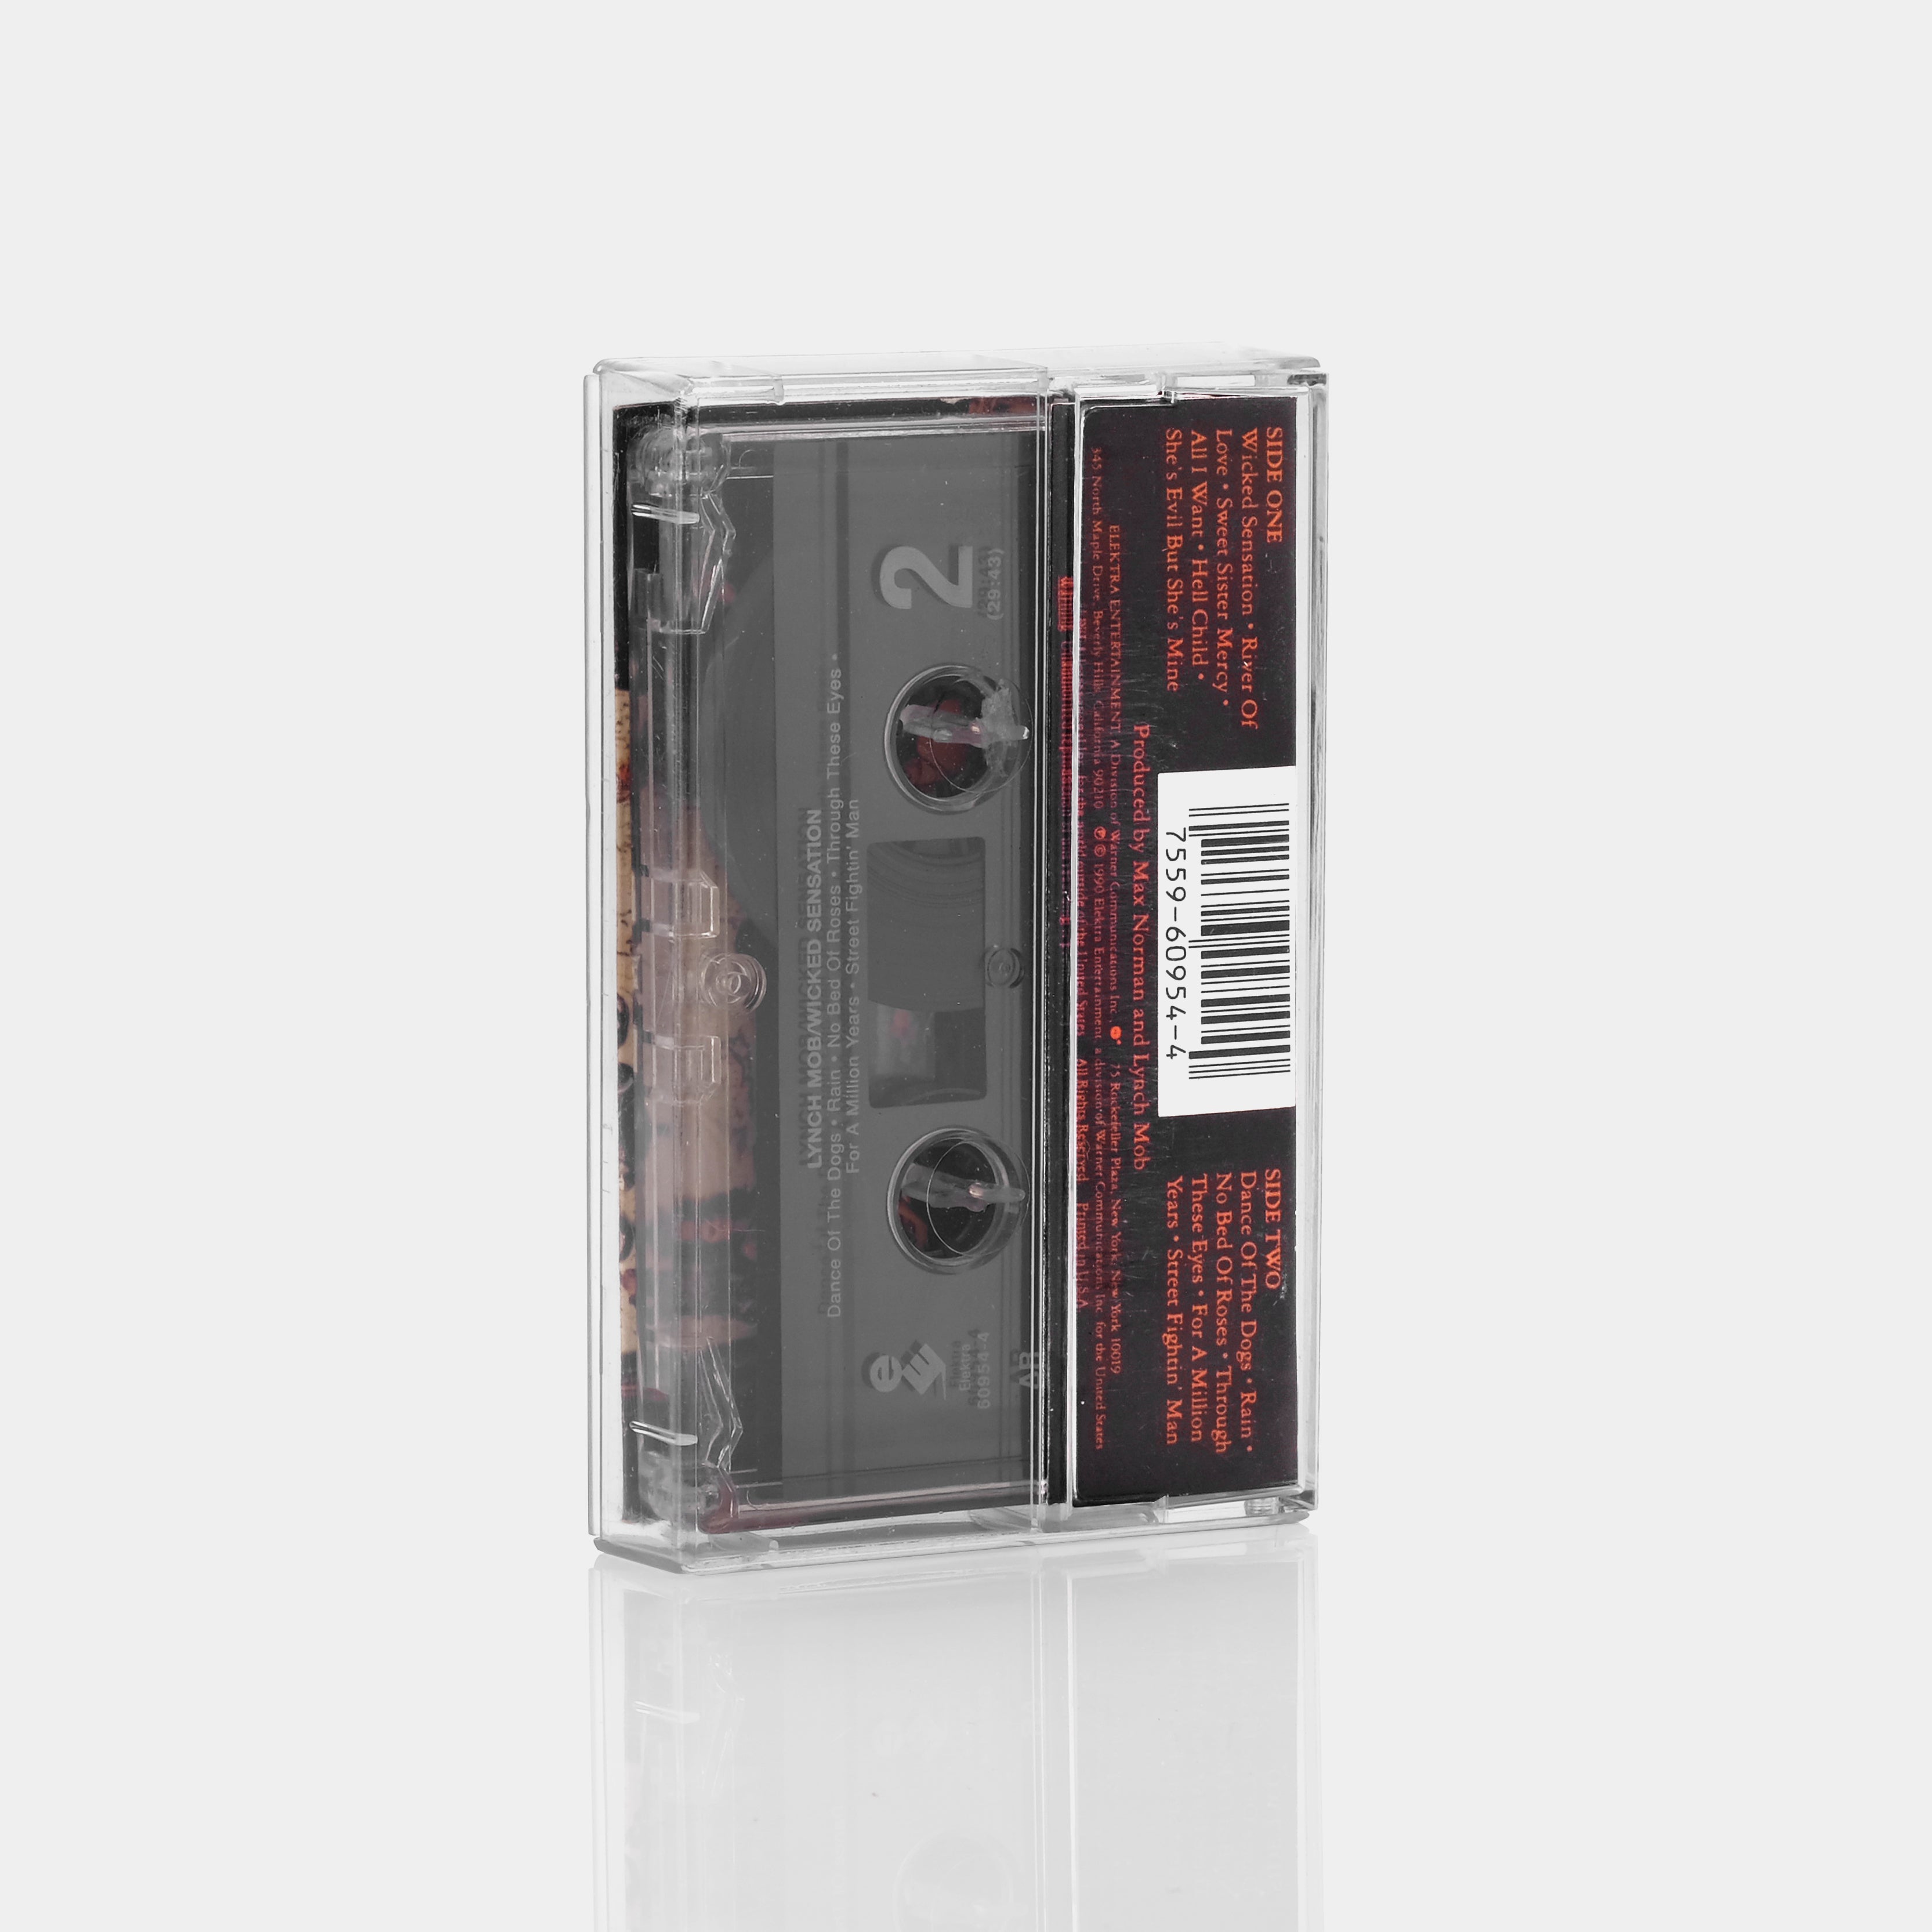 Lynch Mob - Wicked Sensation Cassette Tape